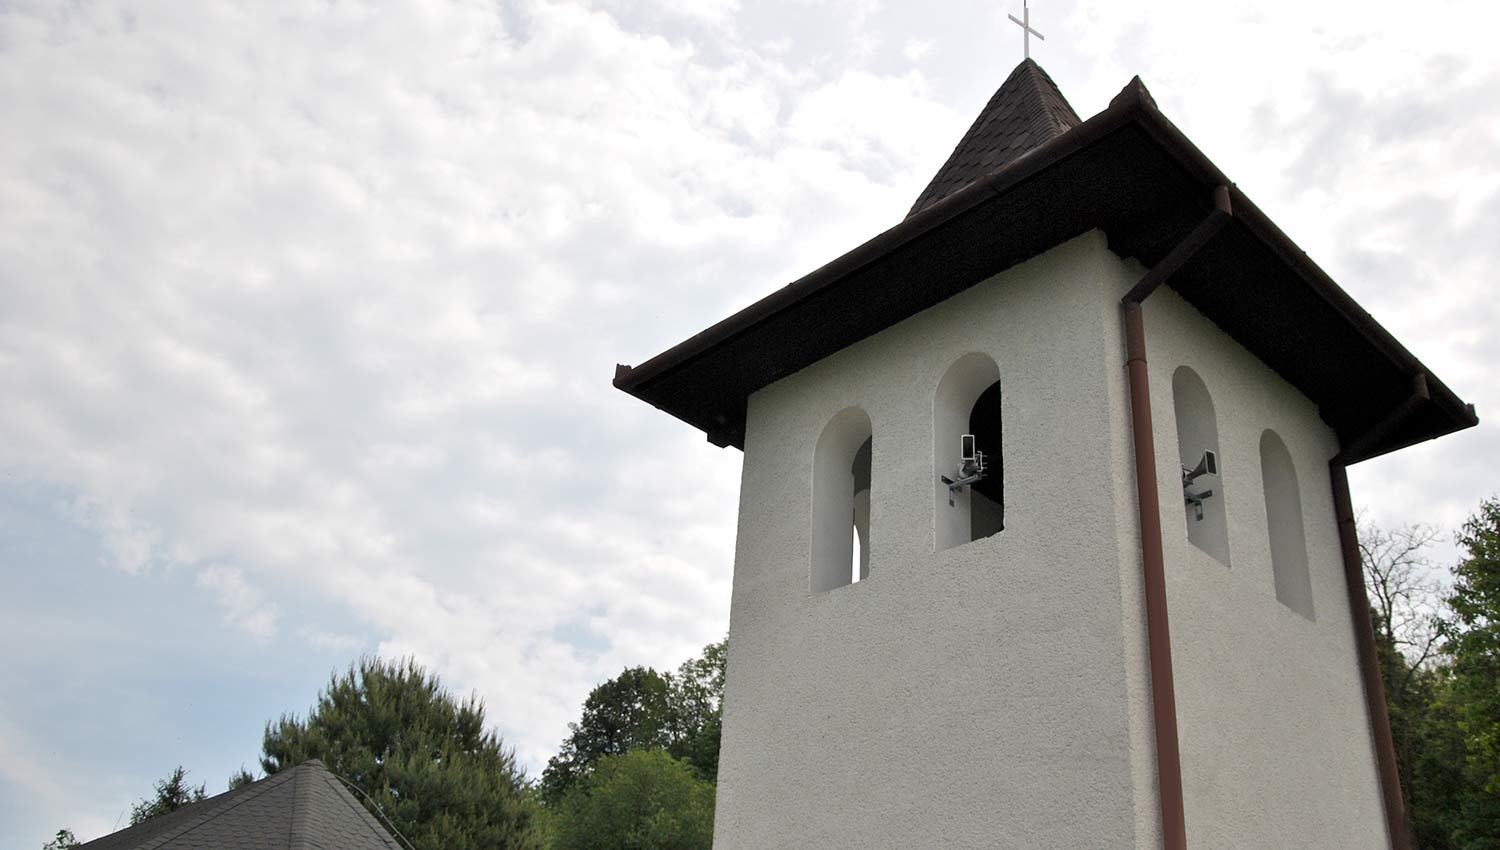 Электронные колокола все чаще созывают людей в церковь